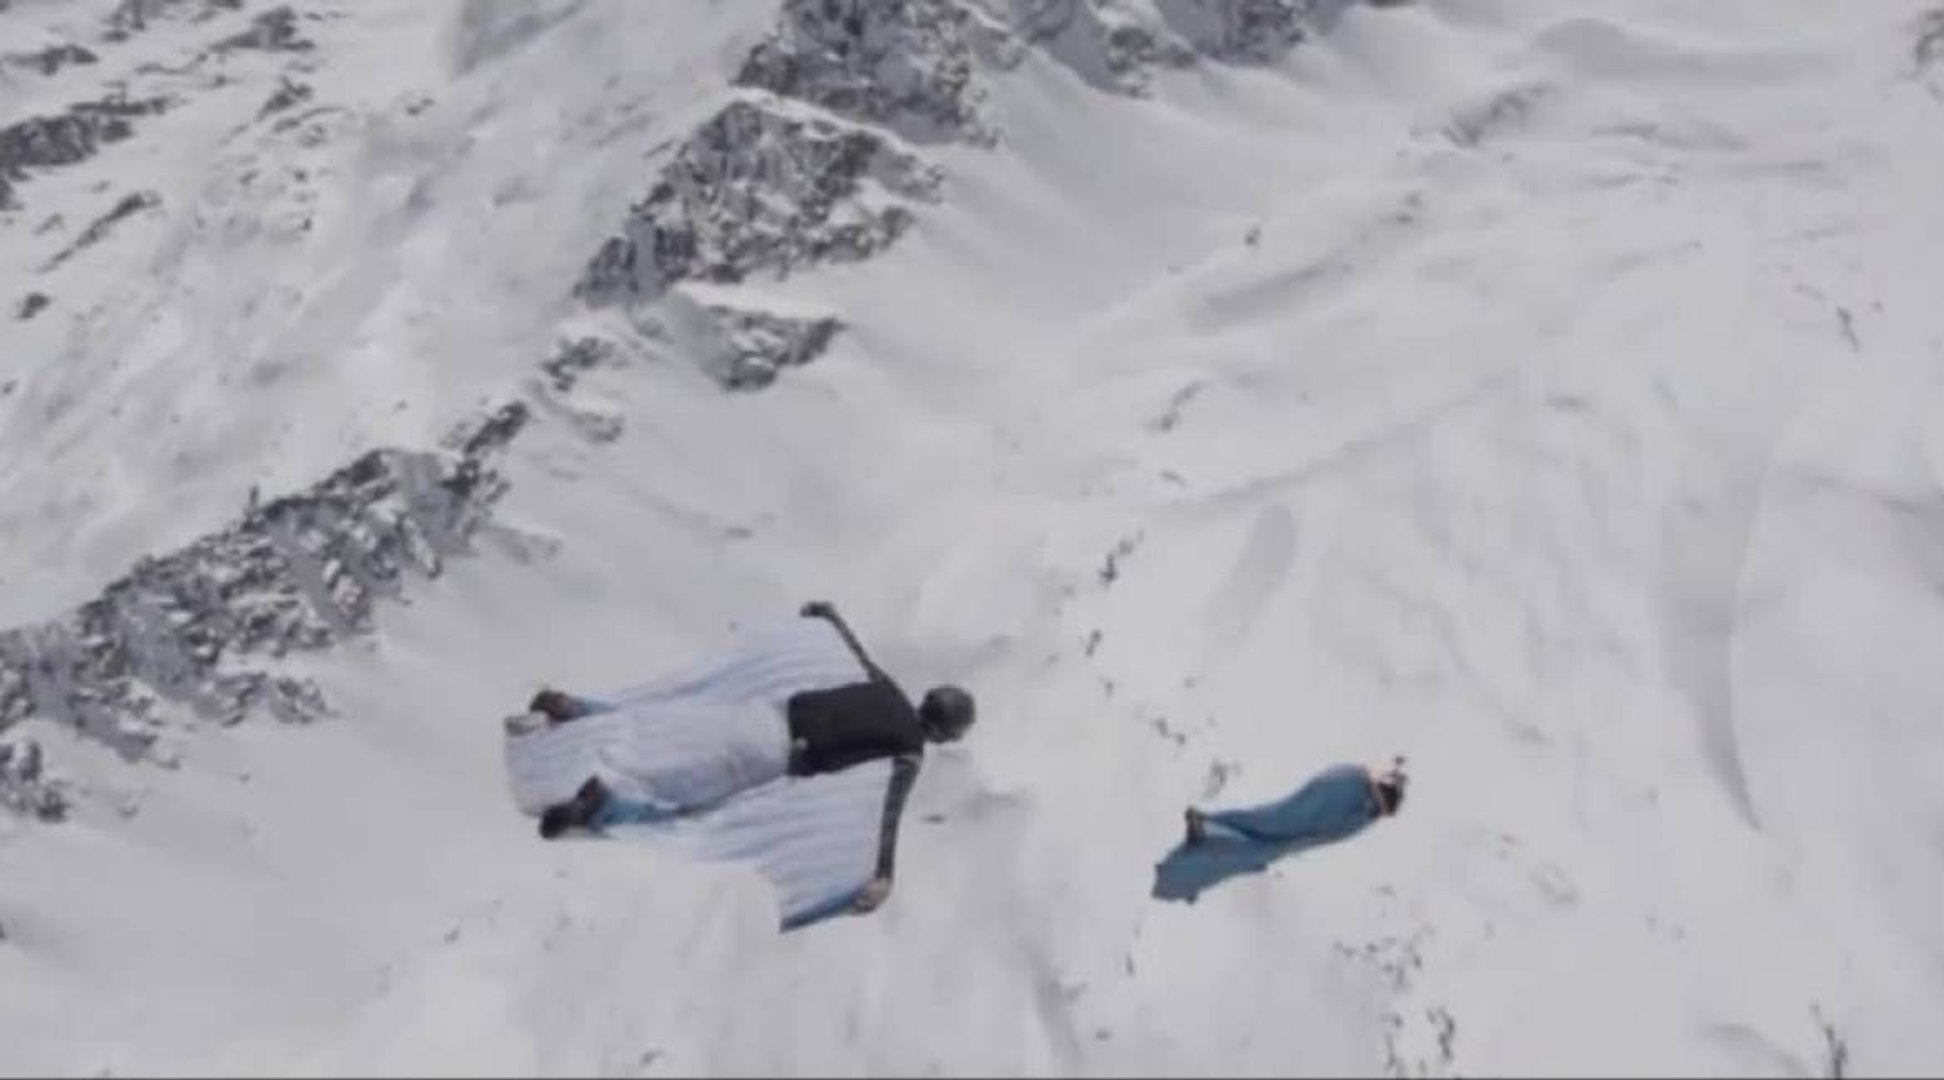 La piste de Megève en caméra embarquée - Skicross - CM - Vidéo Dailymotion